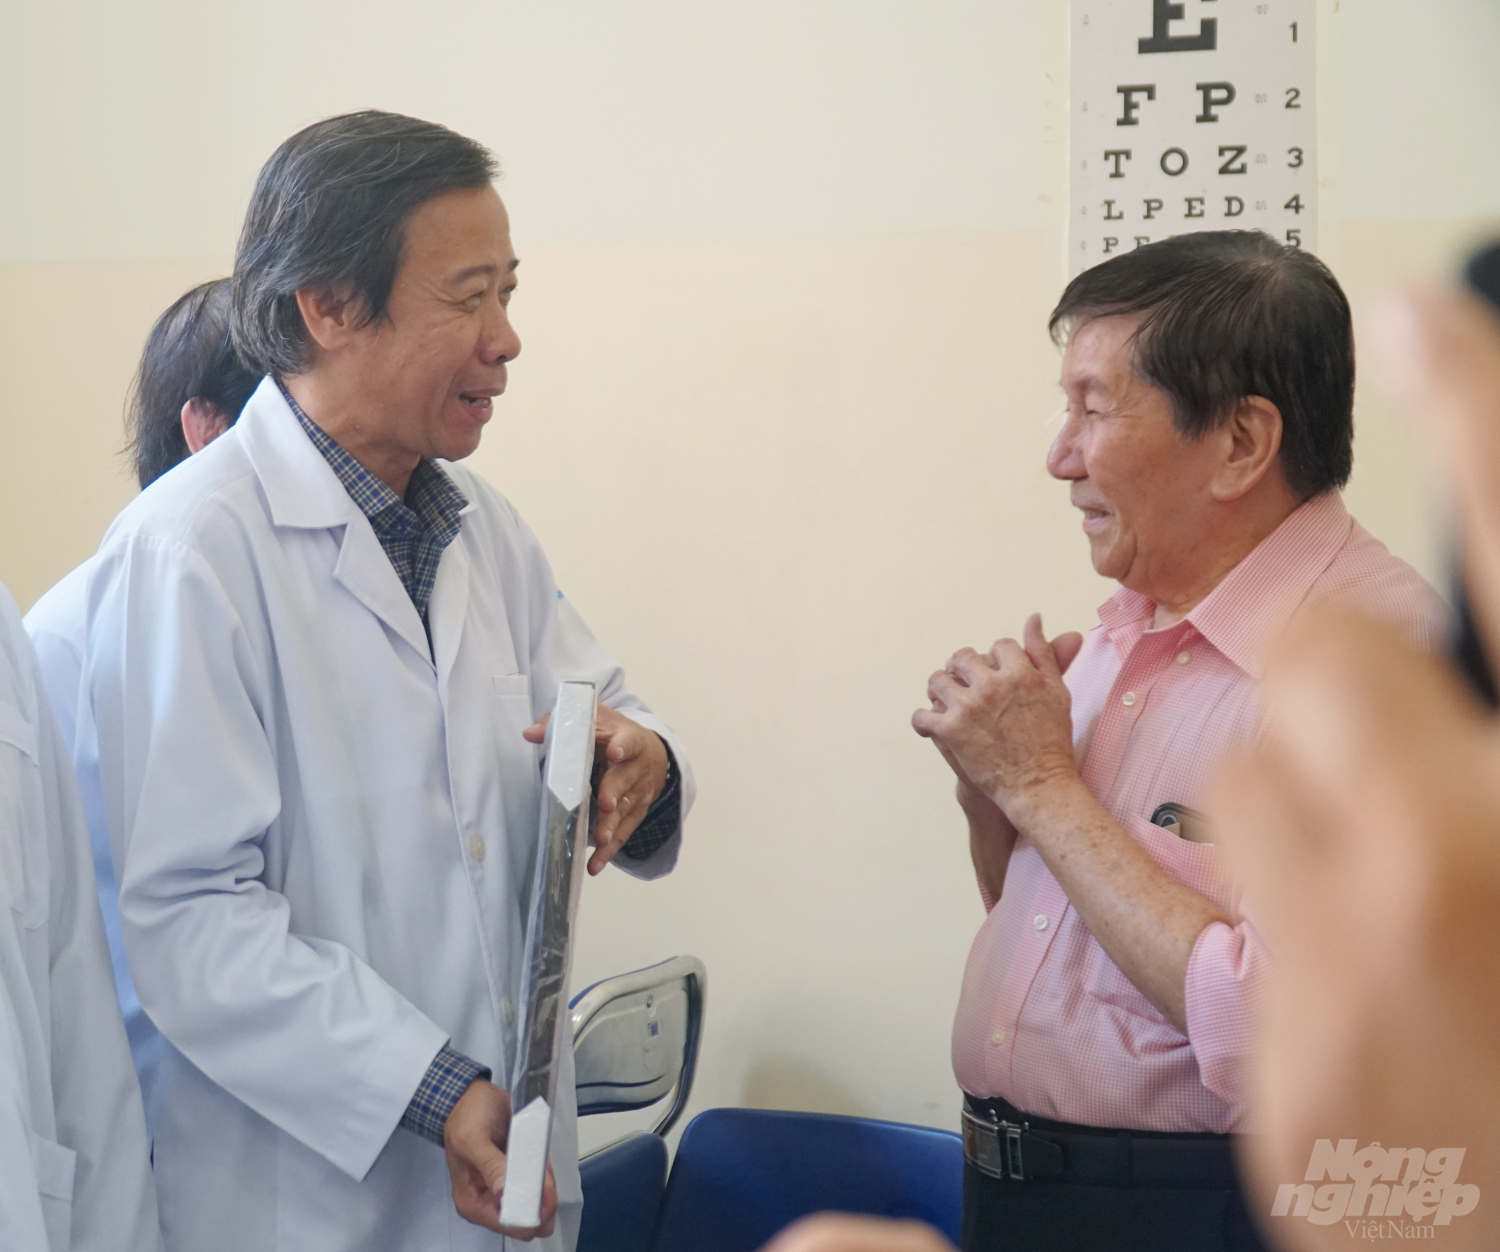 Ông T.K.H xúc động khi được Giám đốc Bệnh viện Bệnh Nhiệt đới tặng bức hình Bệnh viện làm kỷ niệm sau 21 ngày ông được điều trị tại đây. Ảnh: Nguyễn Thủy.